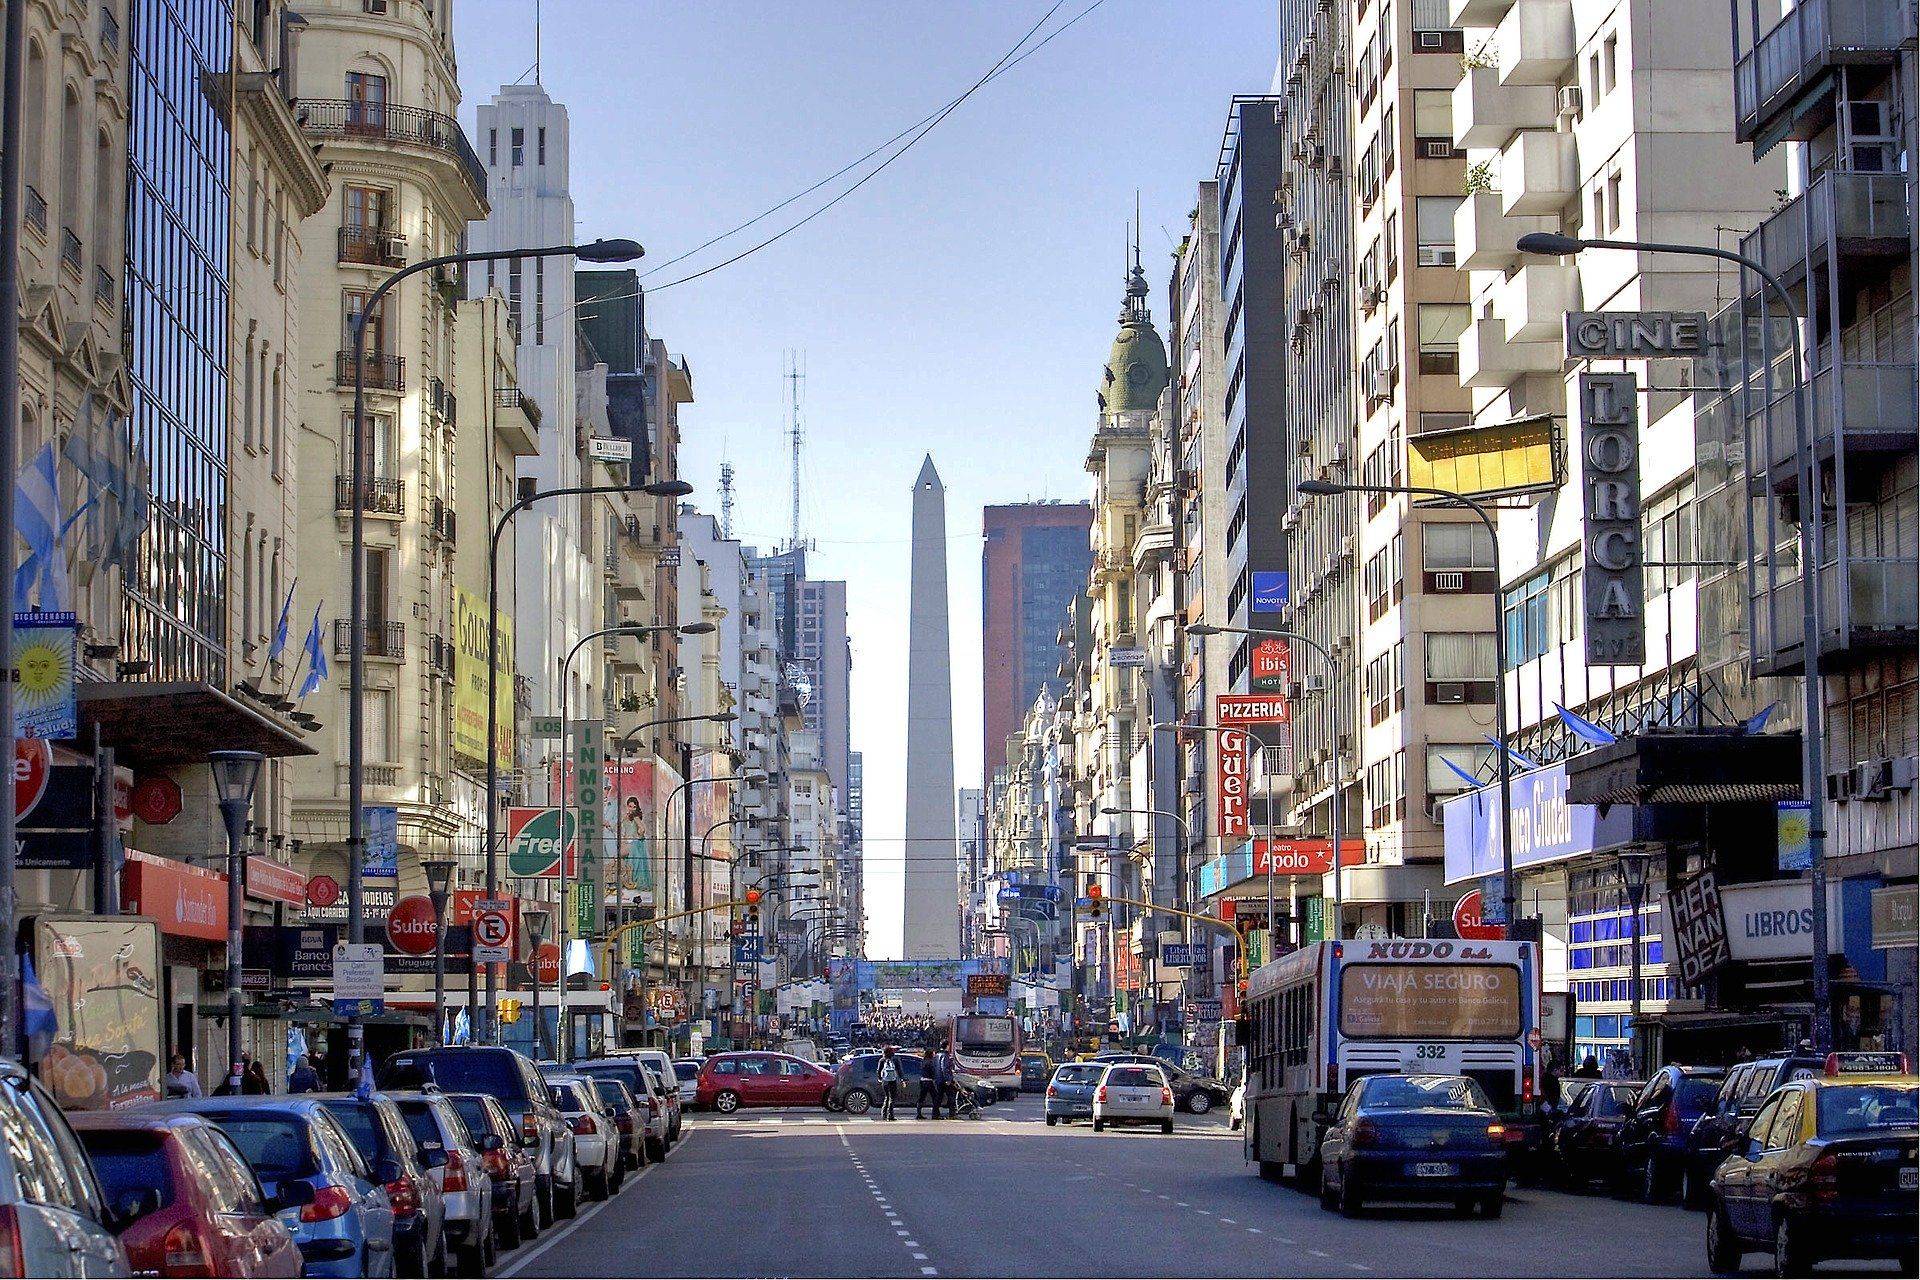 Arrivo a Buenos Aires e visita della città